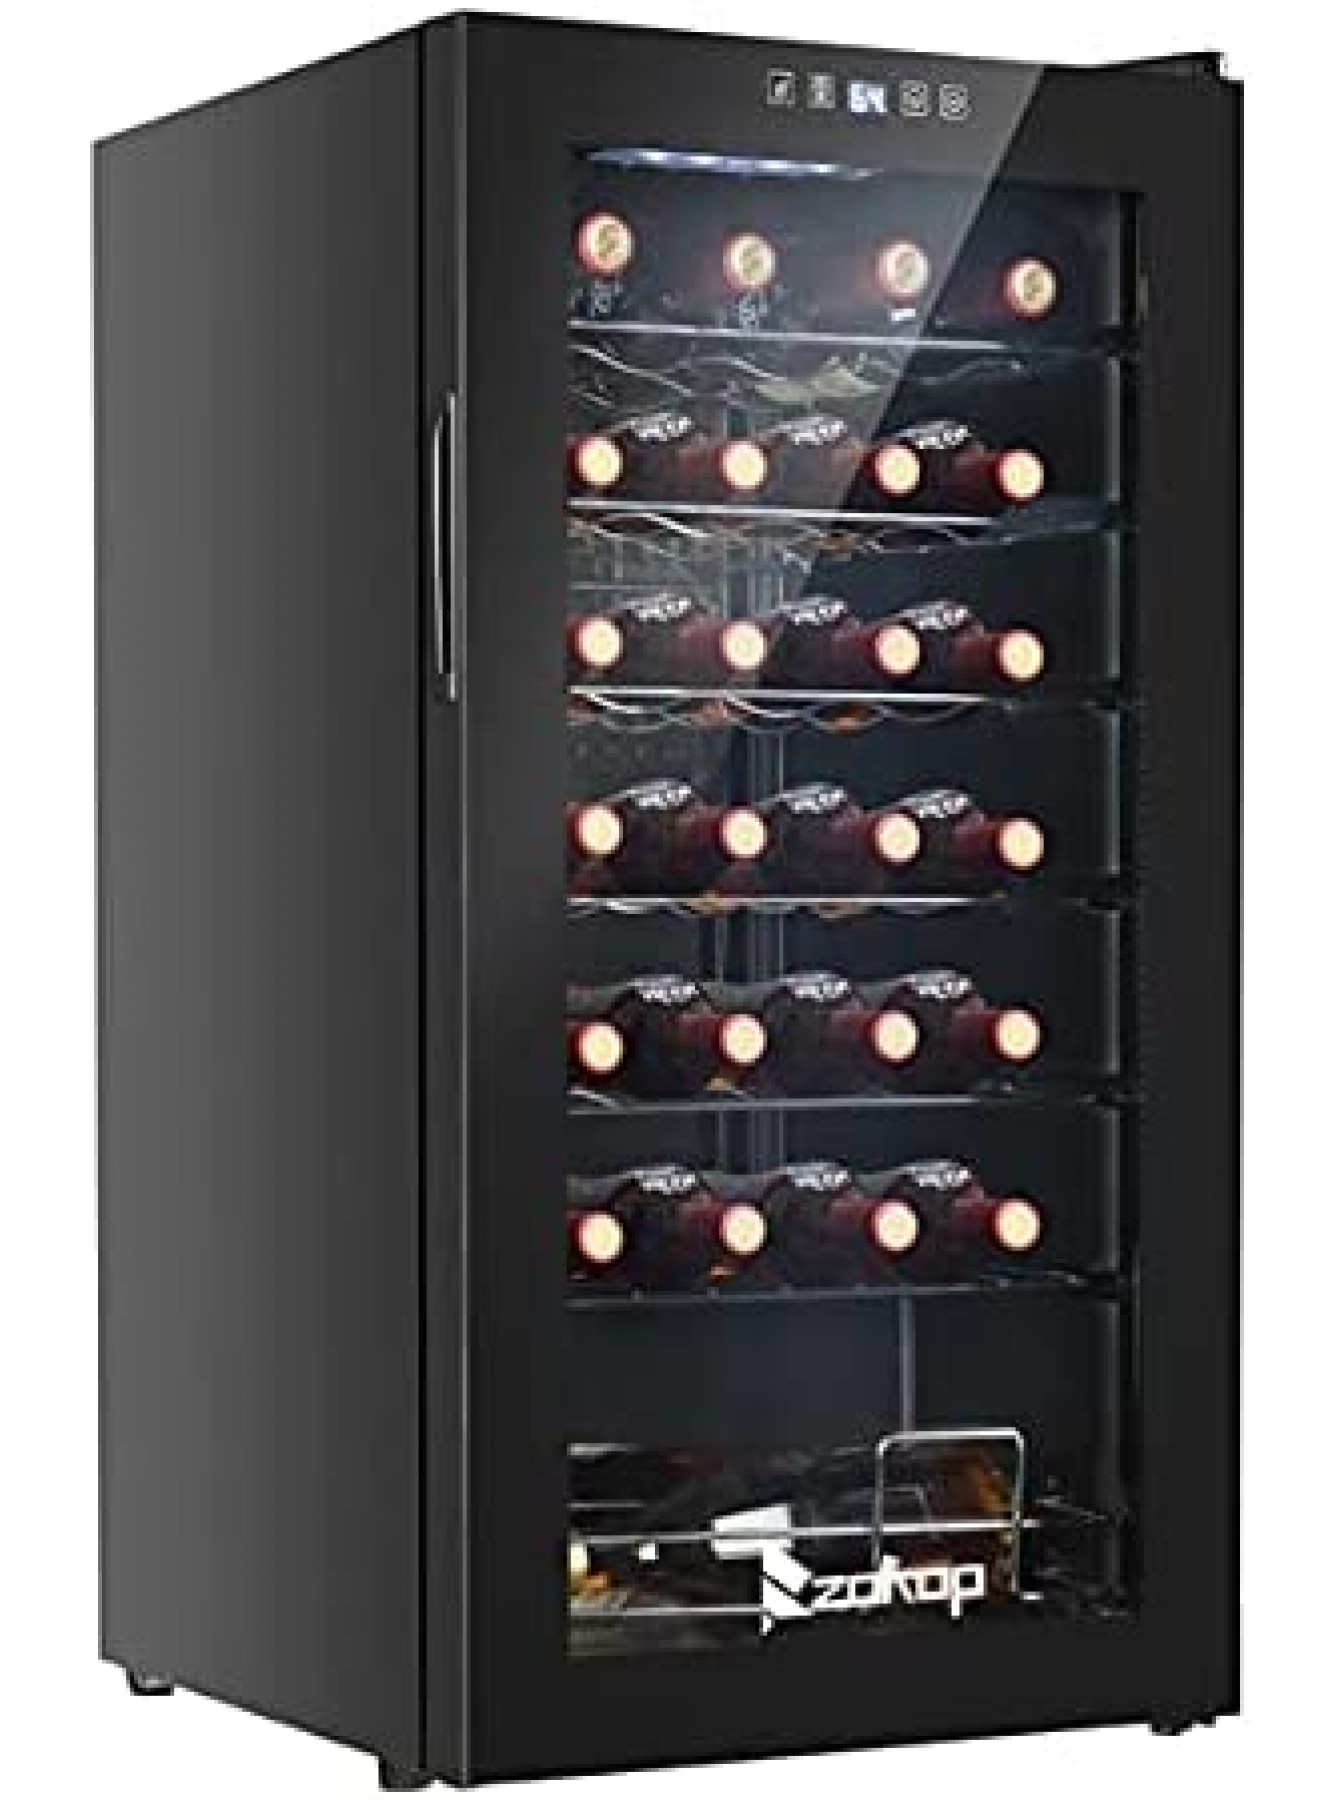 XINGXING 28 Bottle Wine Cooler Glass Door Counter Bar Fridge Compressor Adjust Temperature Freestanding Wine Cellar B09DVS5D3B